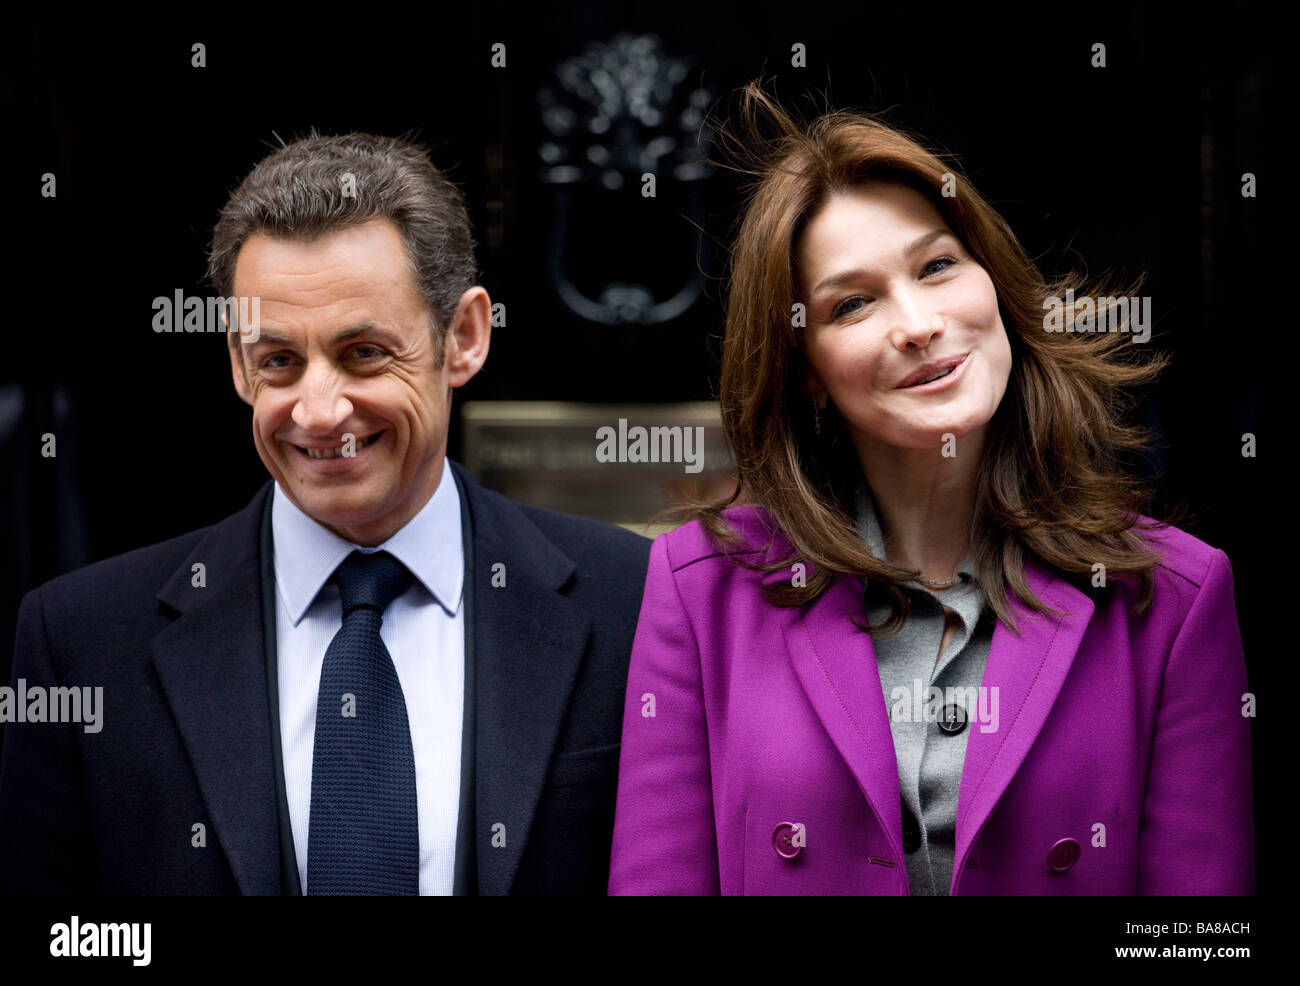 Il Presidente francese Nicolas Sarkozy e sua moglie prima donna di Francia Madame Carla Bruni Sarkozy al 10 di Downing Street a Londra Foto Stock